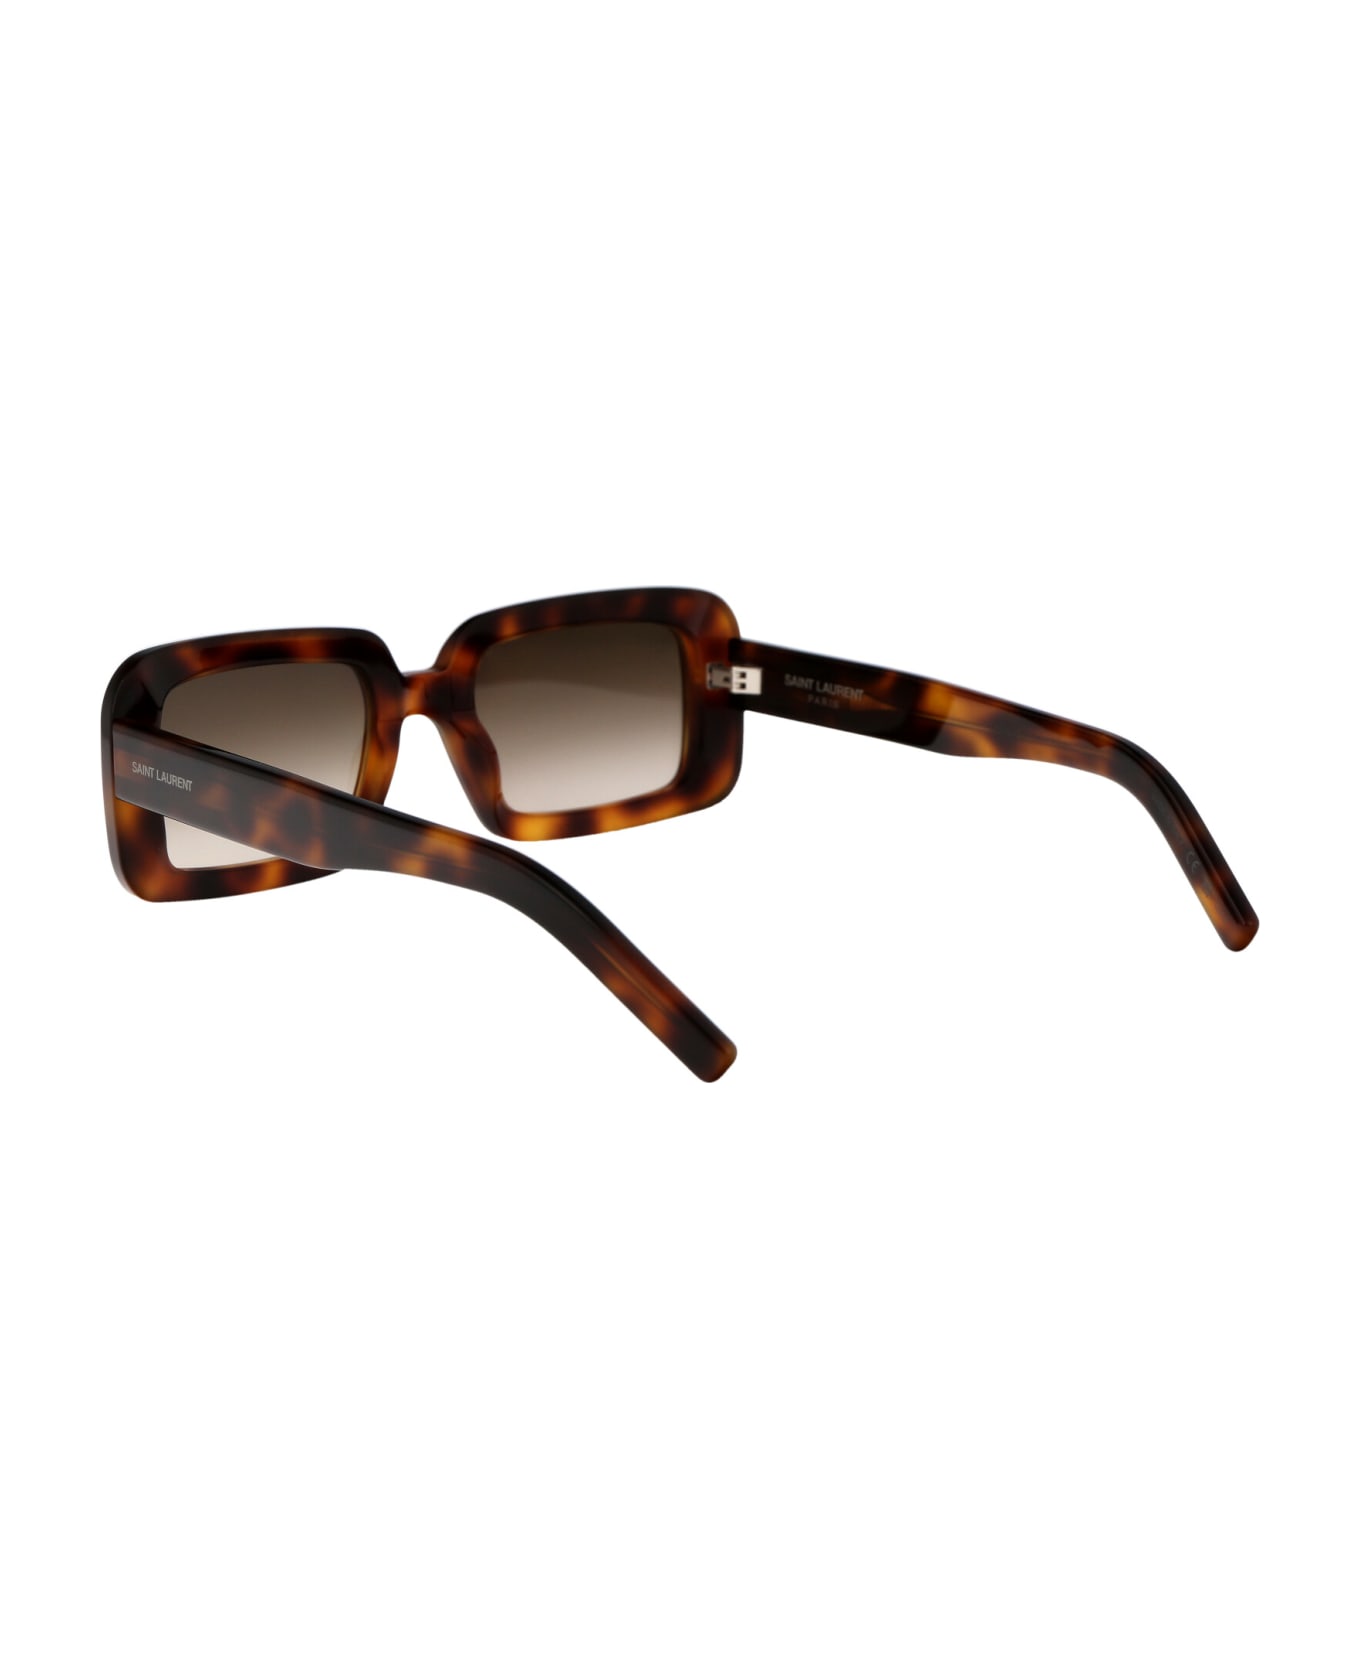 Saint Laurent Eyewear Sl 534 Sunrise Sunglasses - 012 HAVANA HAVANA BROWN